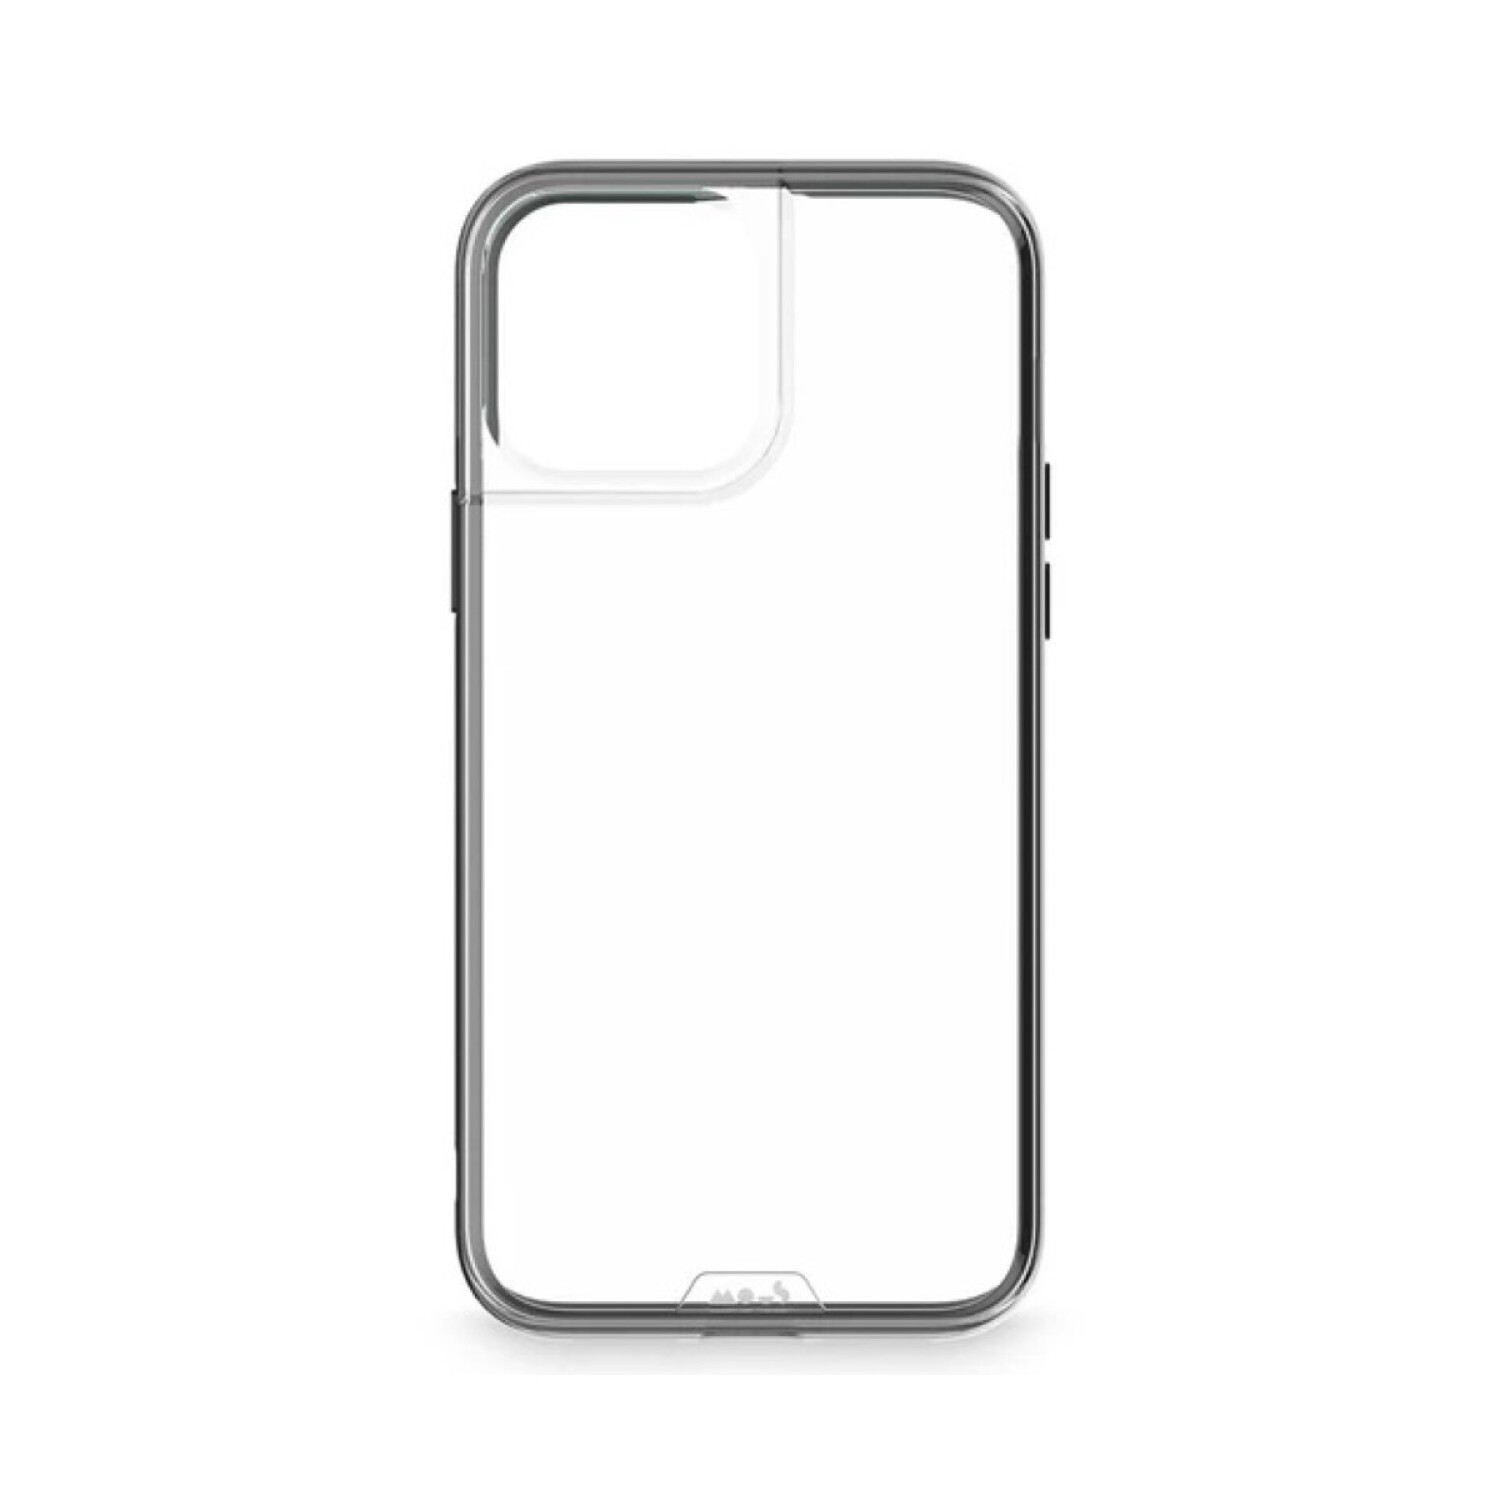 Carcasa Transparente – iPhone 13 PRO MAX – iCase Uruguay